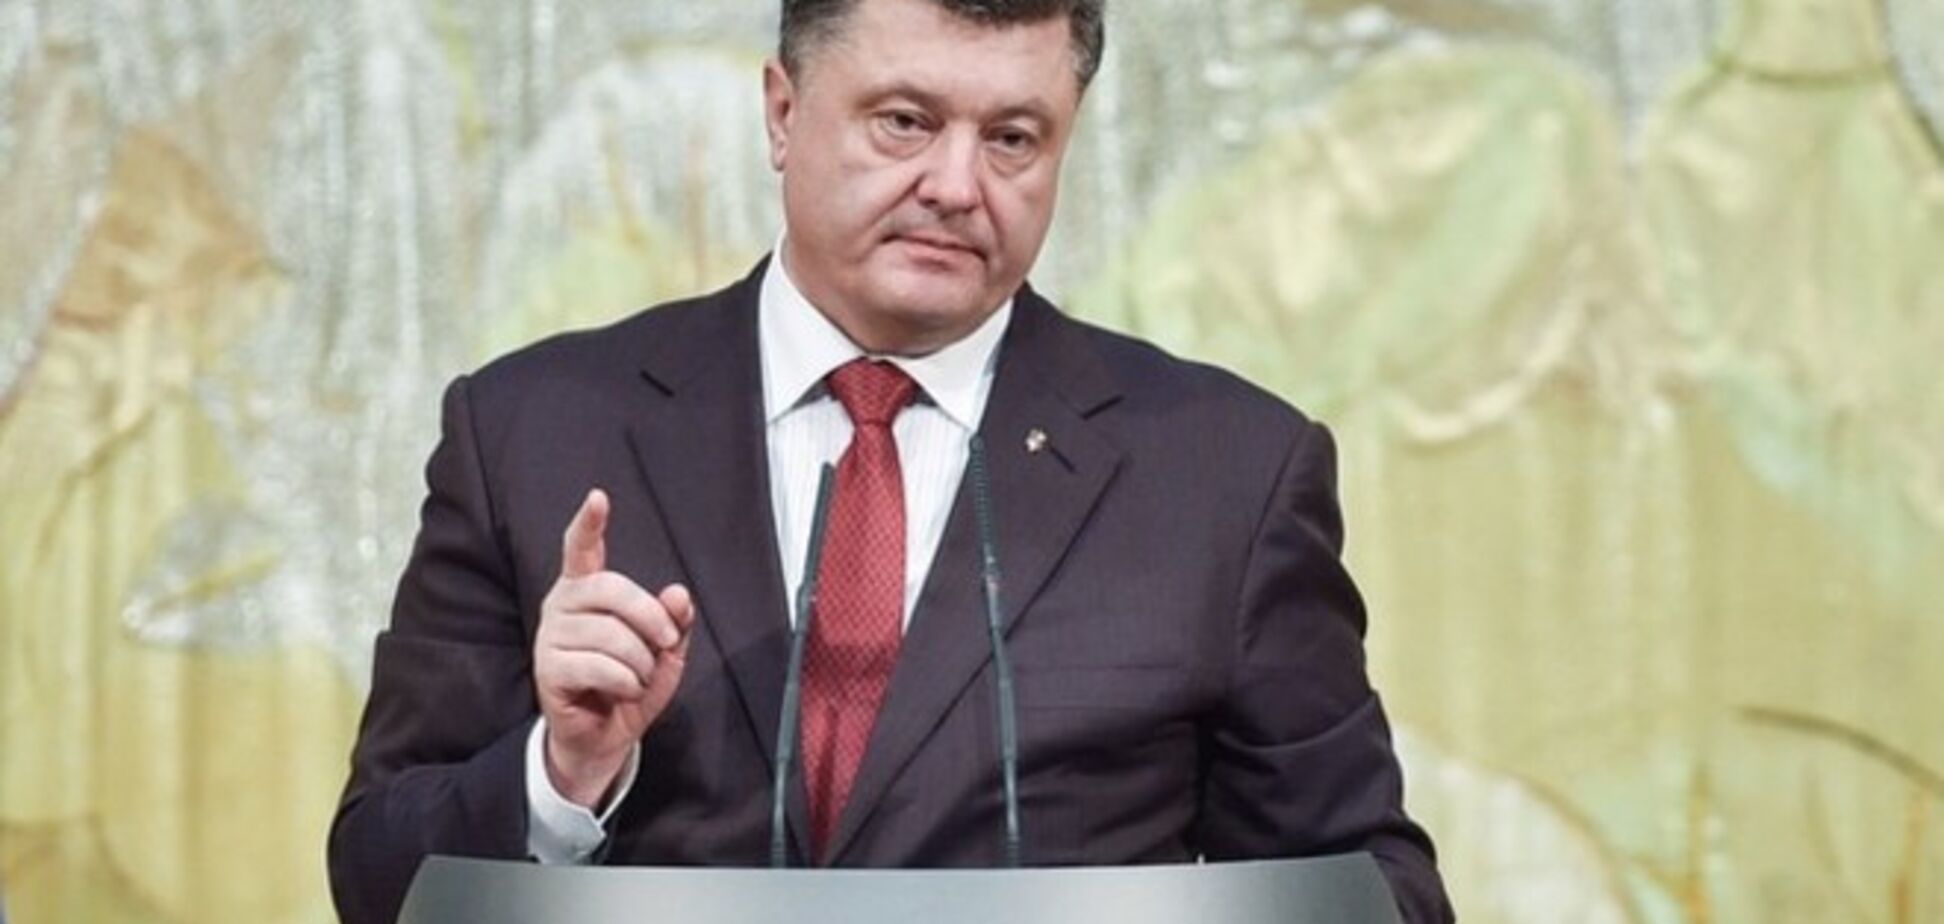 Израильский бизнесмен назвал мощным ходом решение Порошенко отменить закон об 'особом статусе' части Донбасса